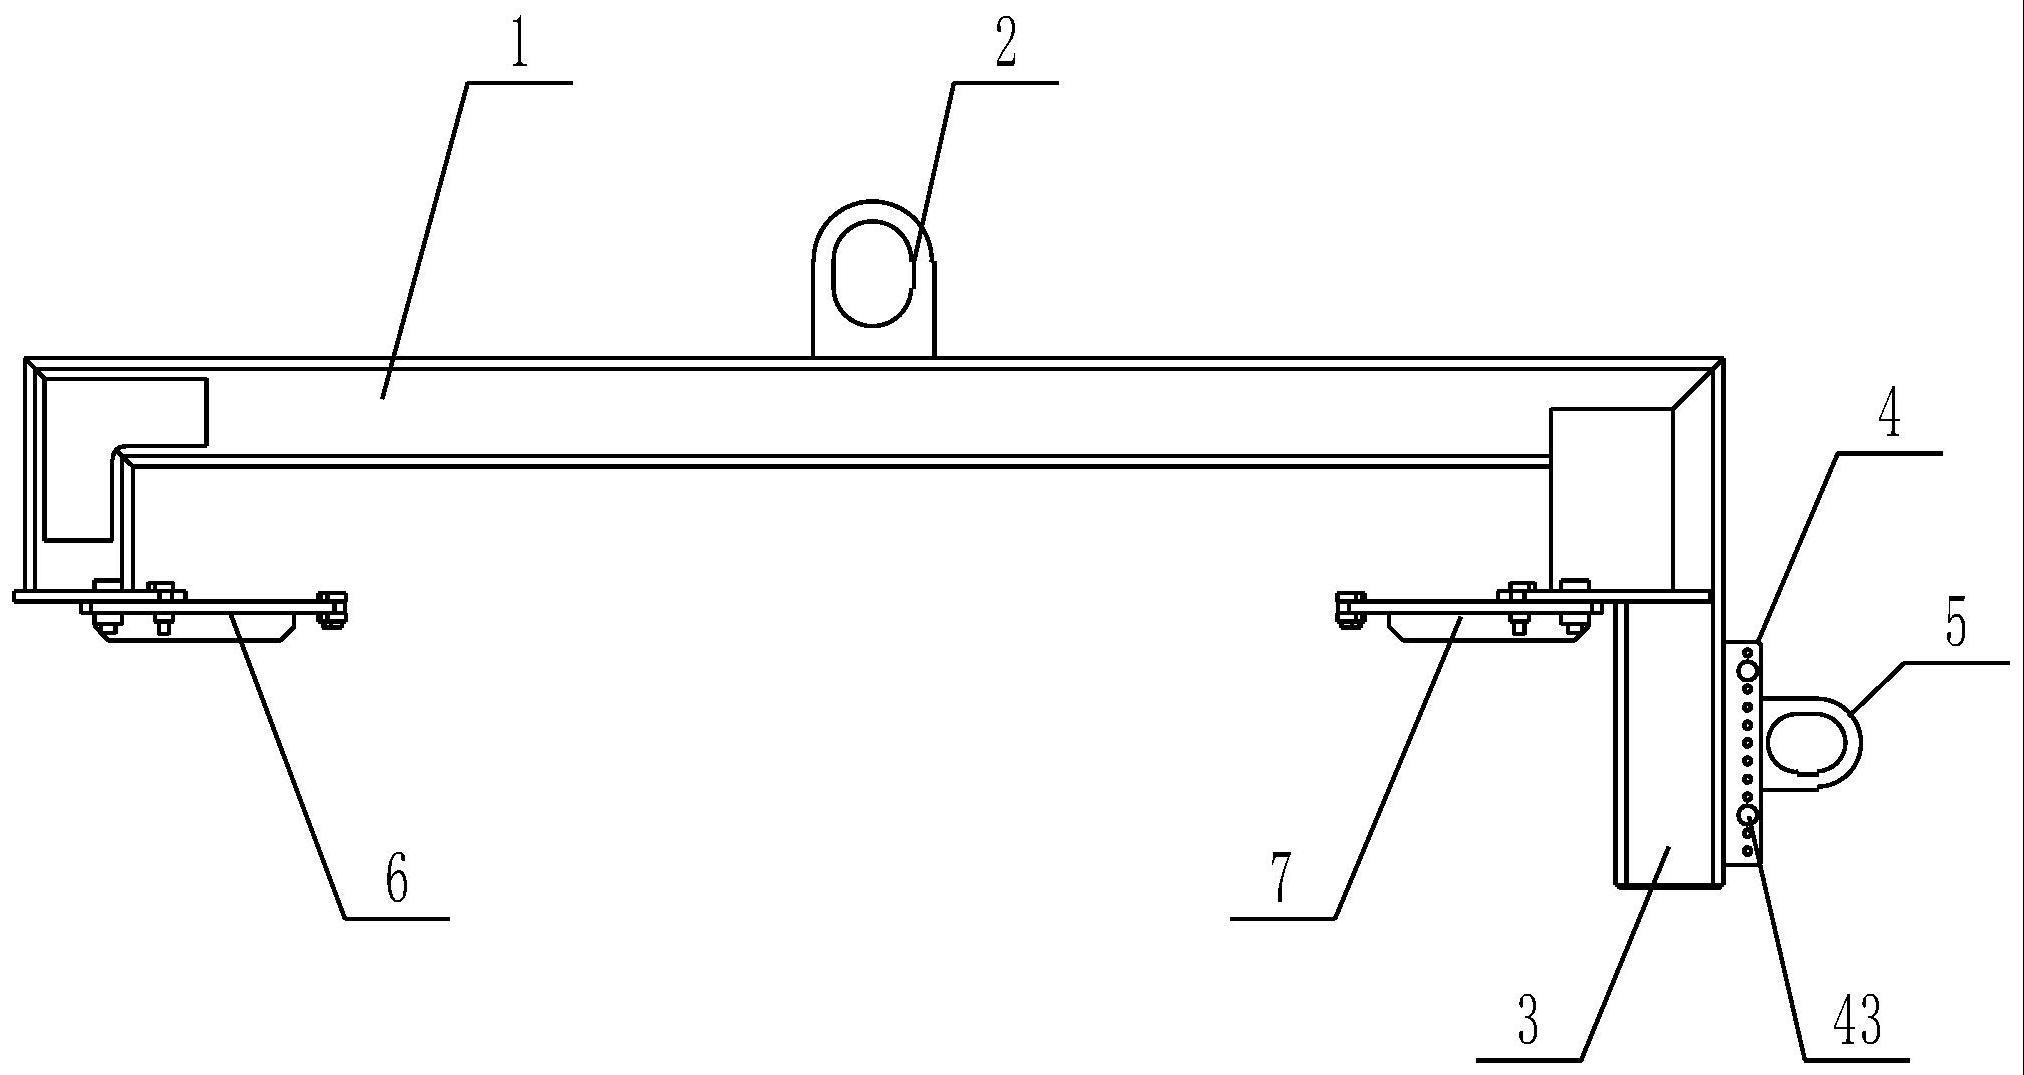 水平和垂直两用的燃气轮机支撑框架吊具的制作方法